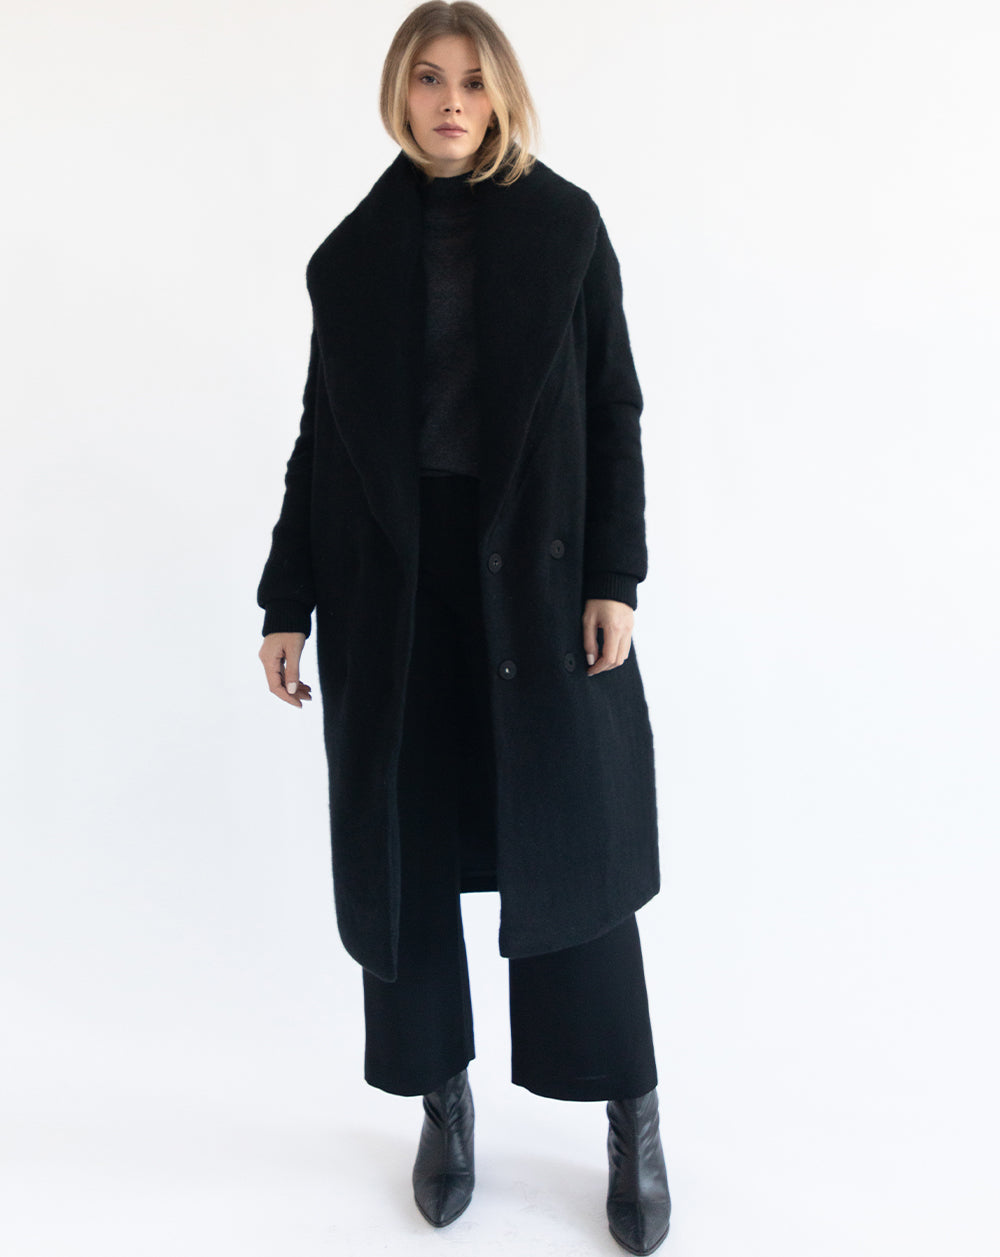 Marsie Cashmere Down Coat (Black (599) / Medium)